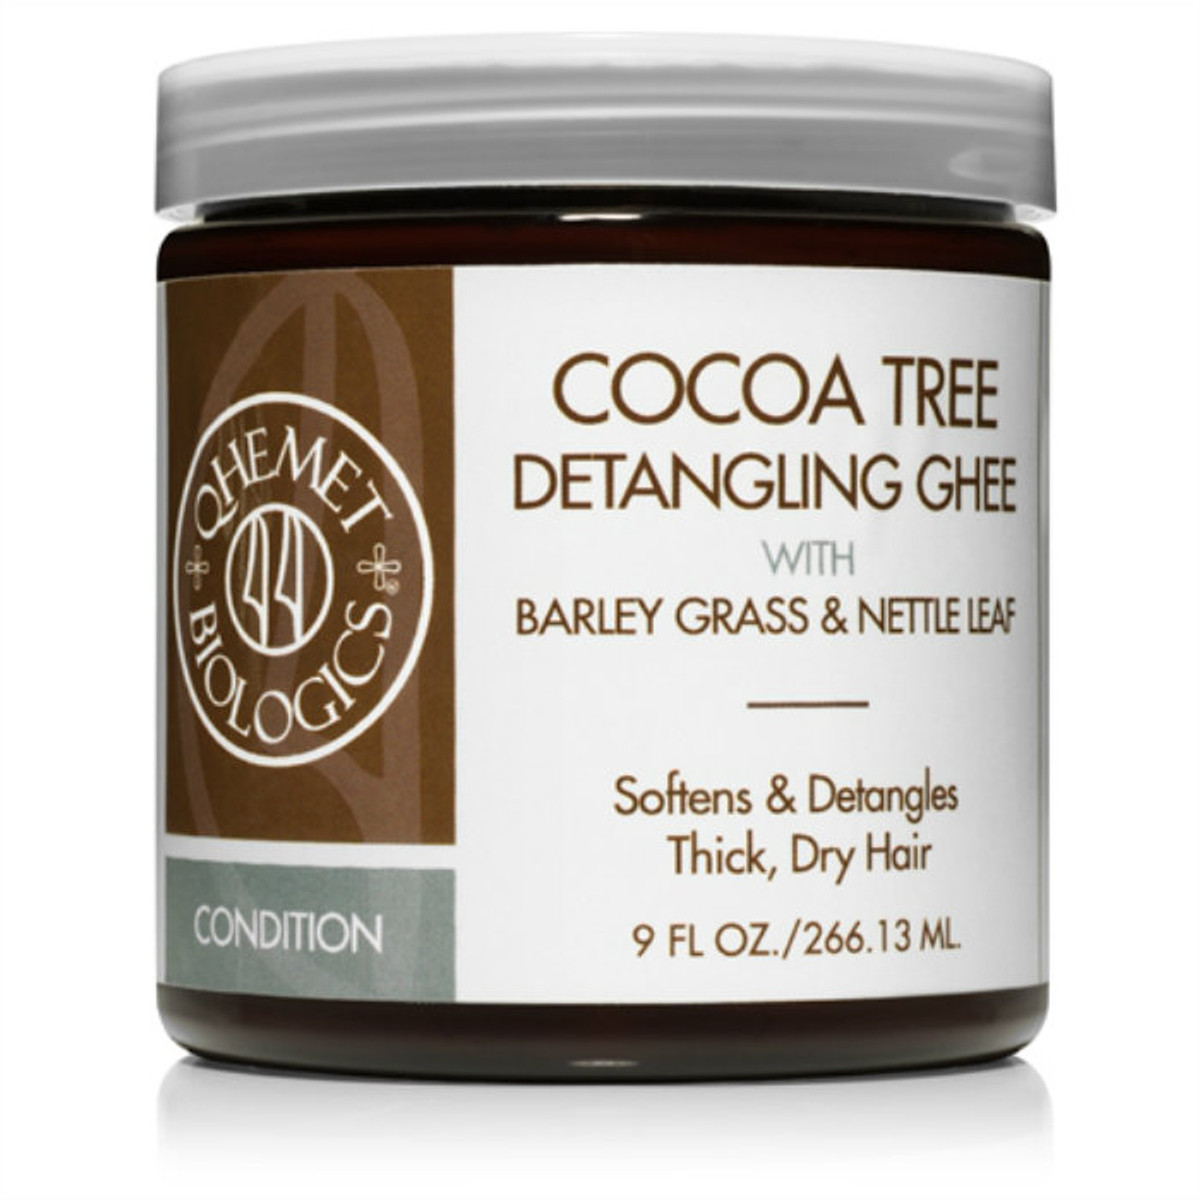 Qhemet "Cocoa Tree Detangling Ghee w/Barley Grass & Nettle Leaf"